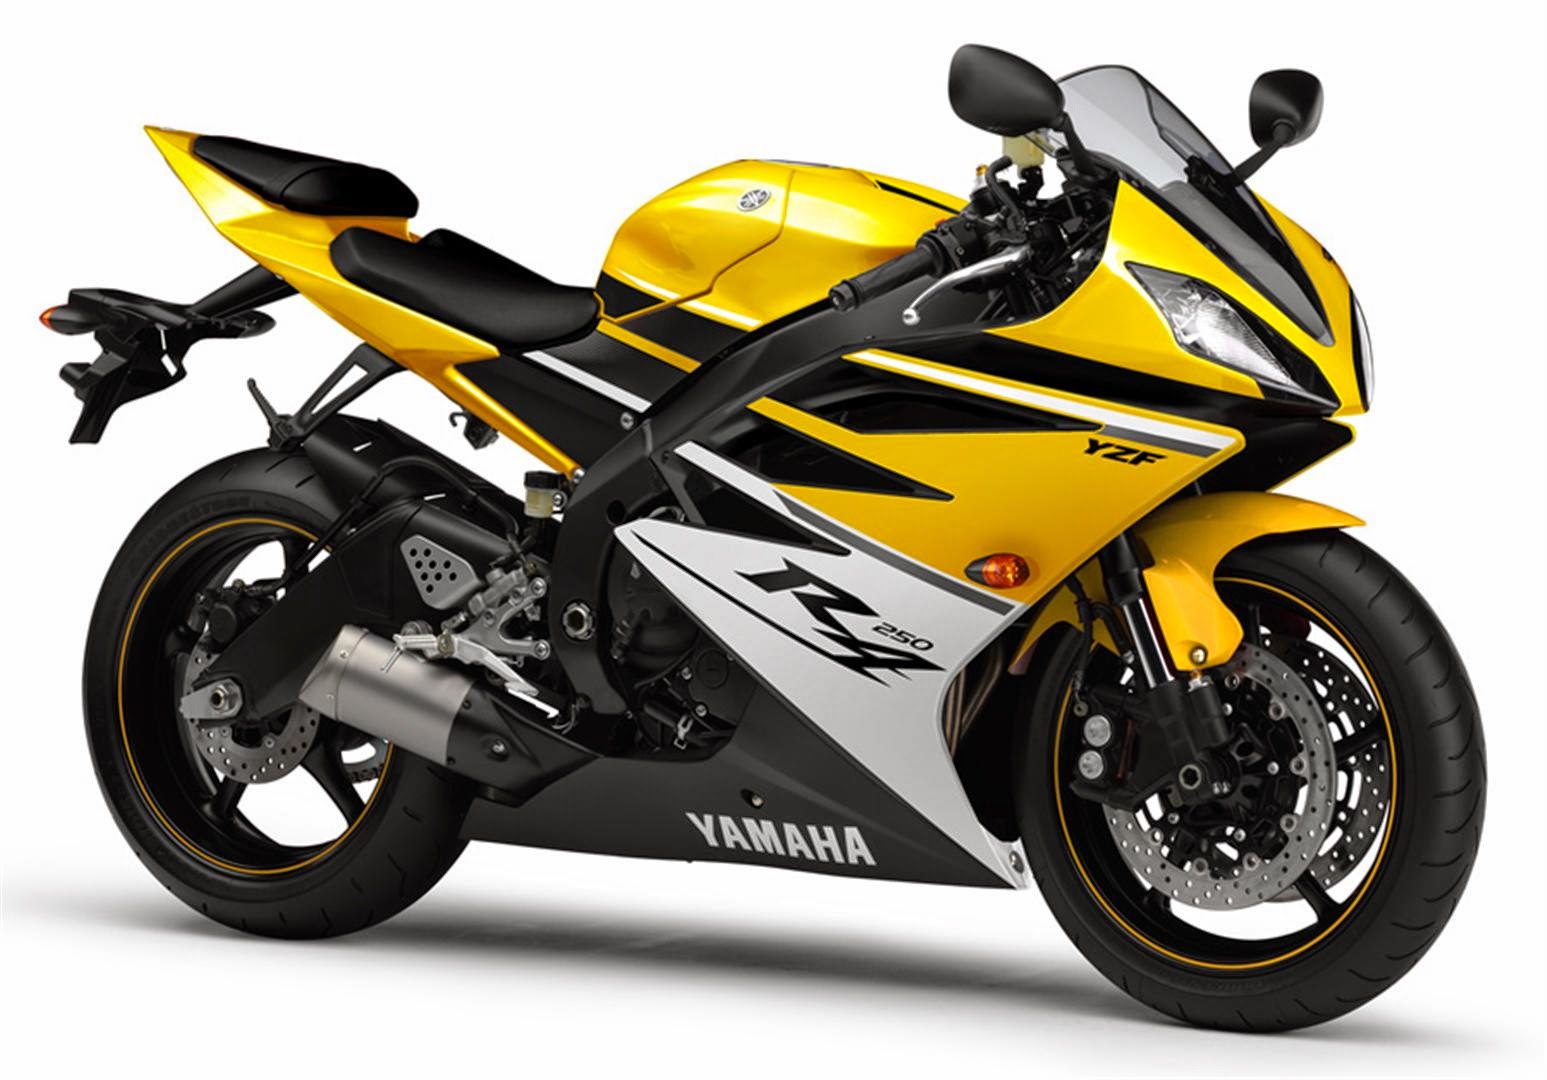 Koleksi Gambar Sepeda Motor Yamaha Terbaru Codot Modifikasi